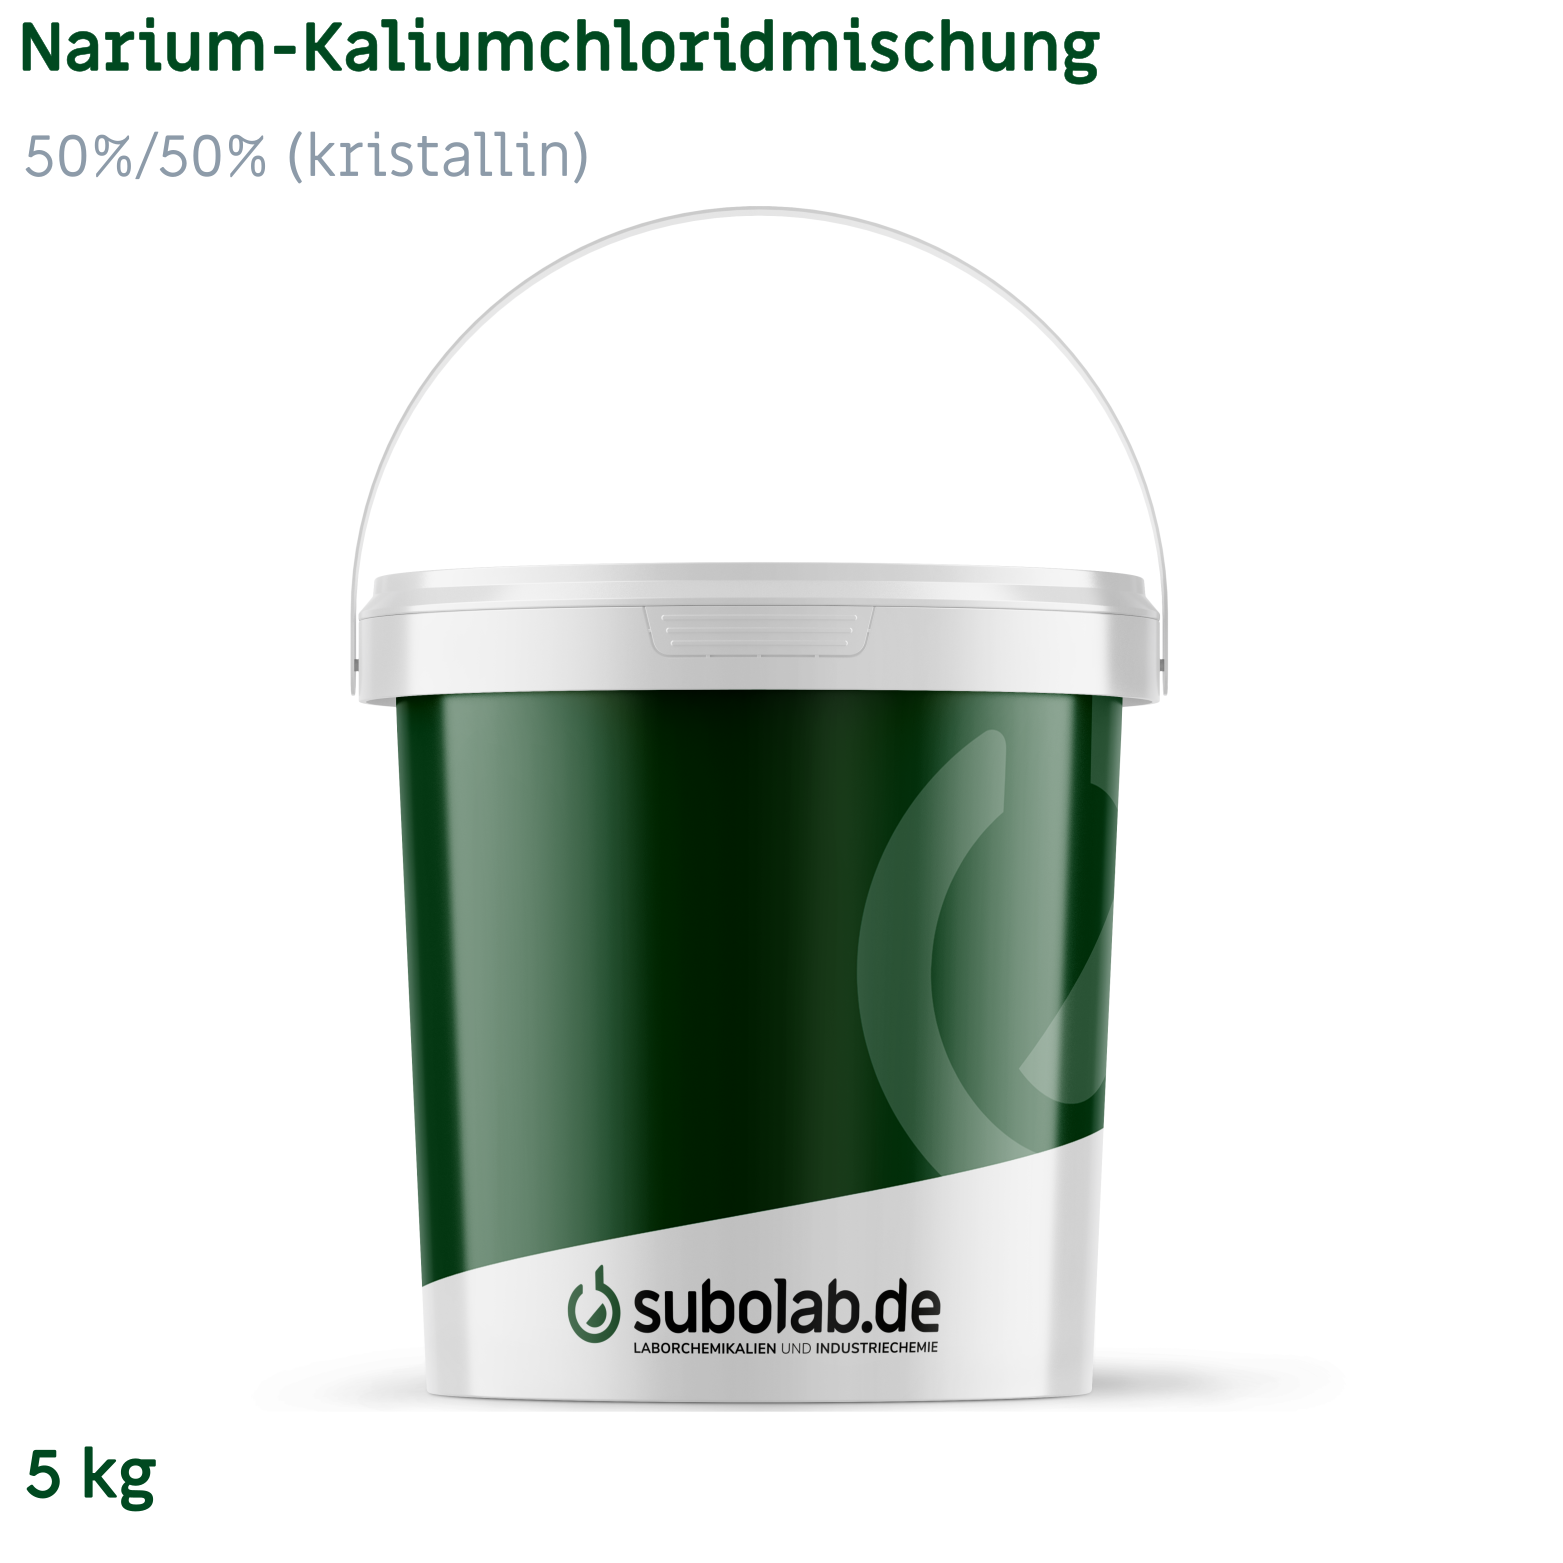 Bild von Narium-Kaliumchloridmischung 50%/50% (kristallin) (5 kg)